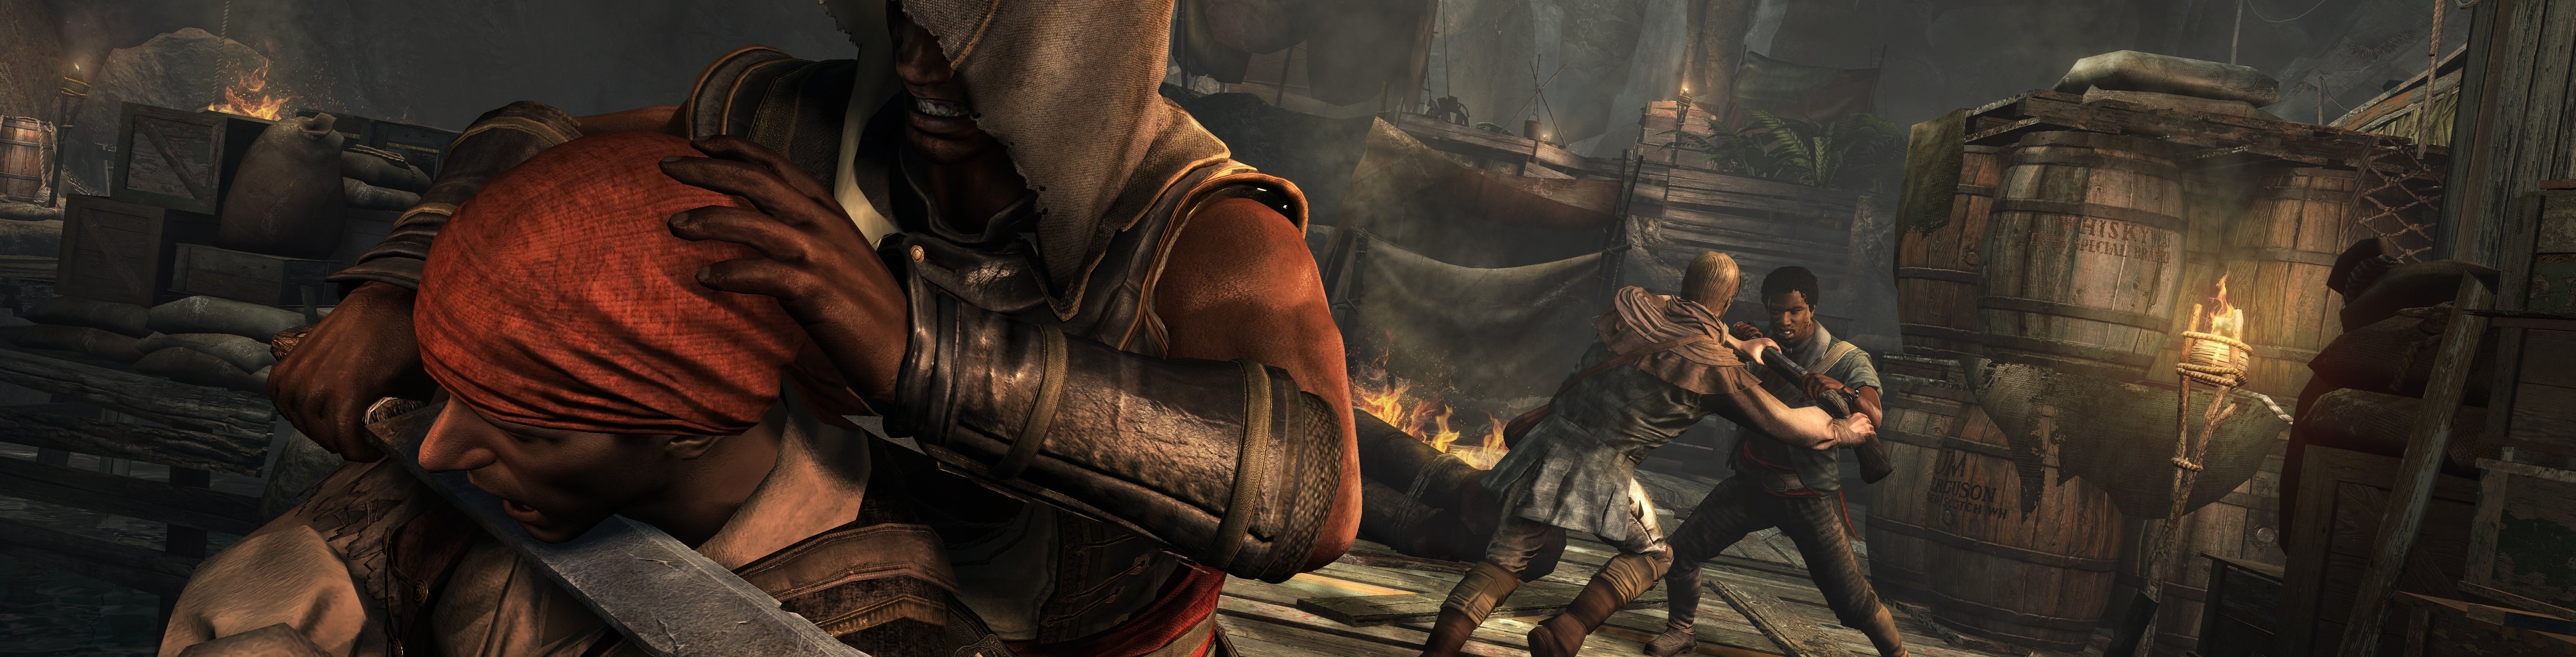 Afbeeldingen van Freedom Cry-uitbreiding voor Assasin's Creed IV op 18 december uit